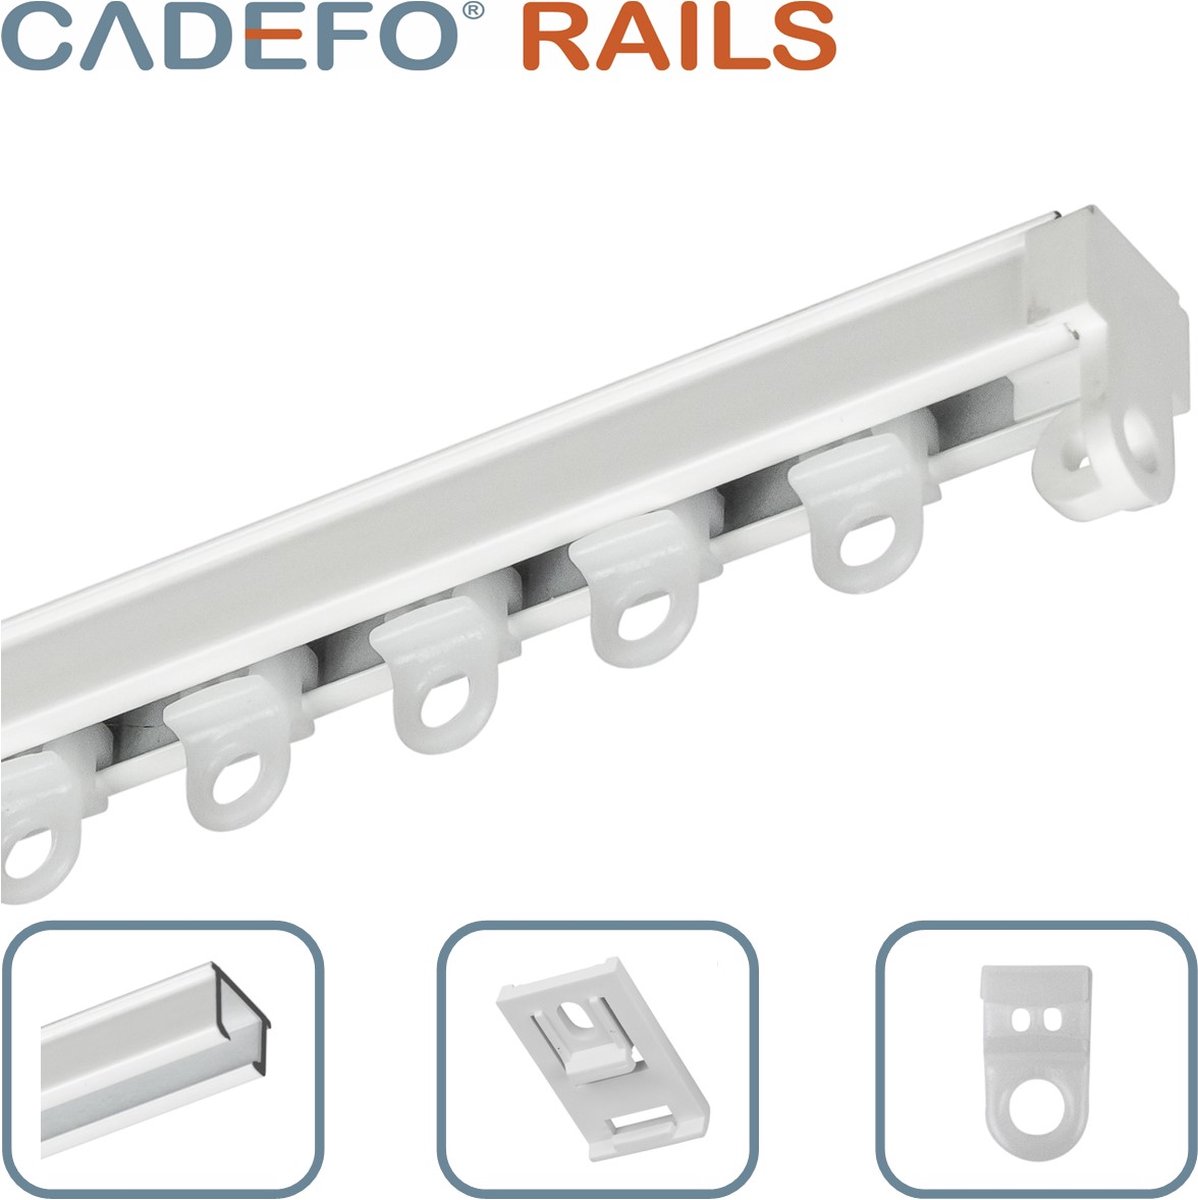 CADEFO RAILS (401 - 450 cm) Gordijnrails - Compleet op maat! - UIT 1 STUK - Leverbaar tot 6 meter - Plafondbevestiging - Lengte 440 cm